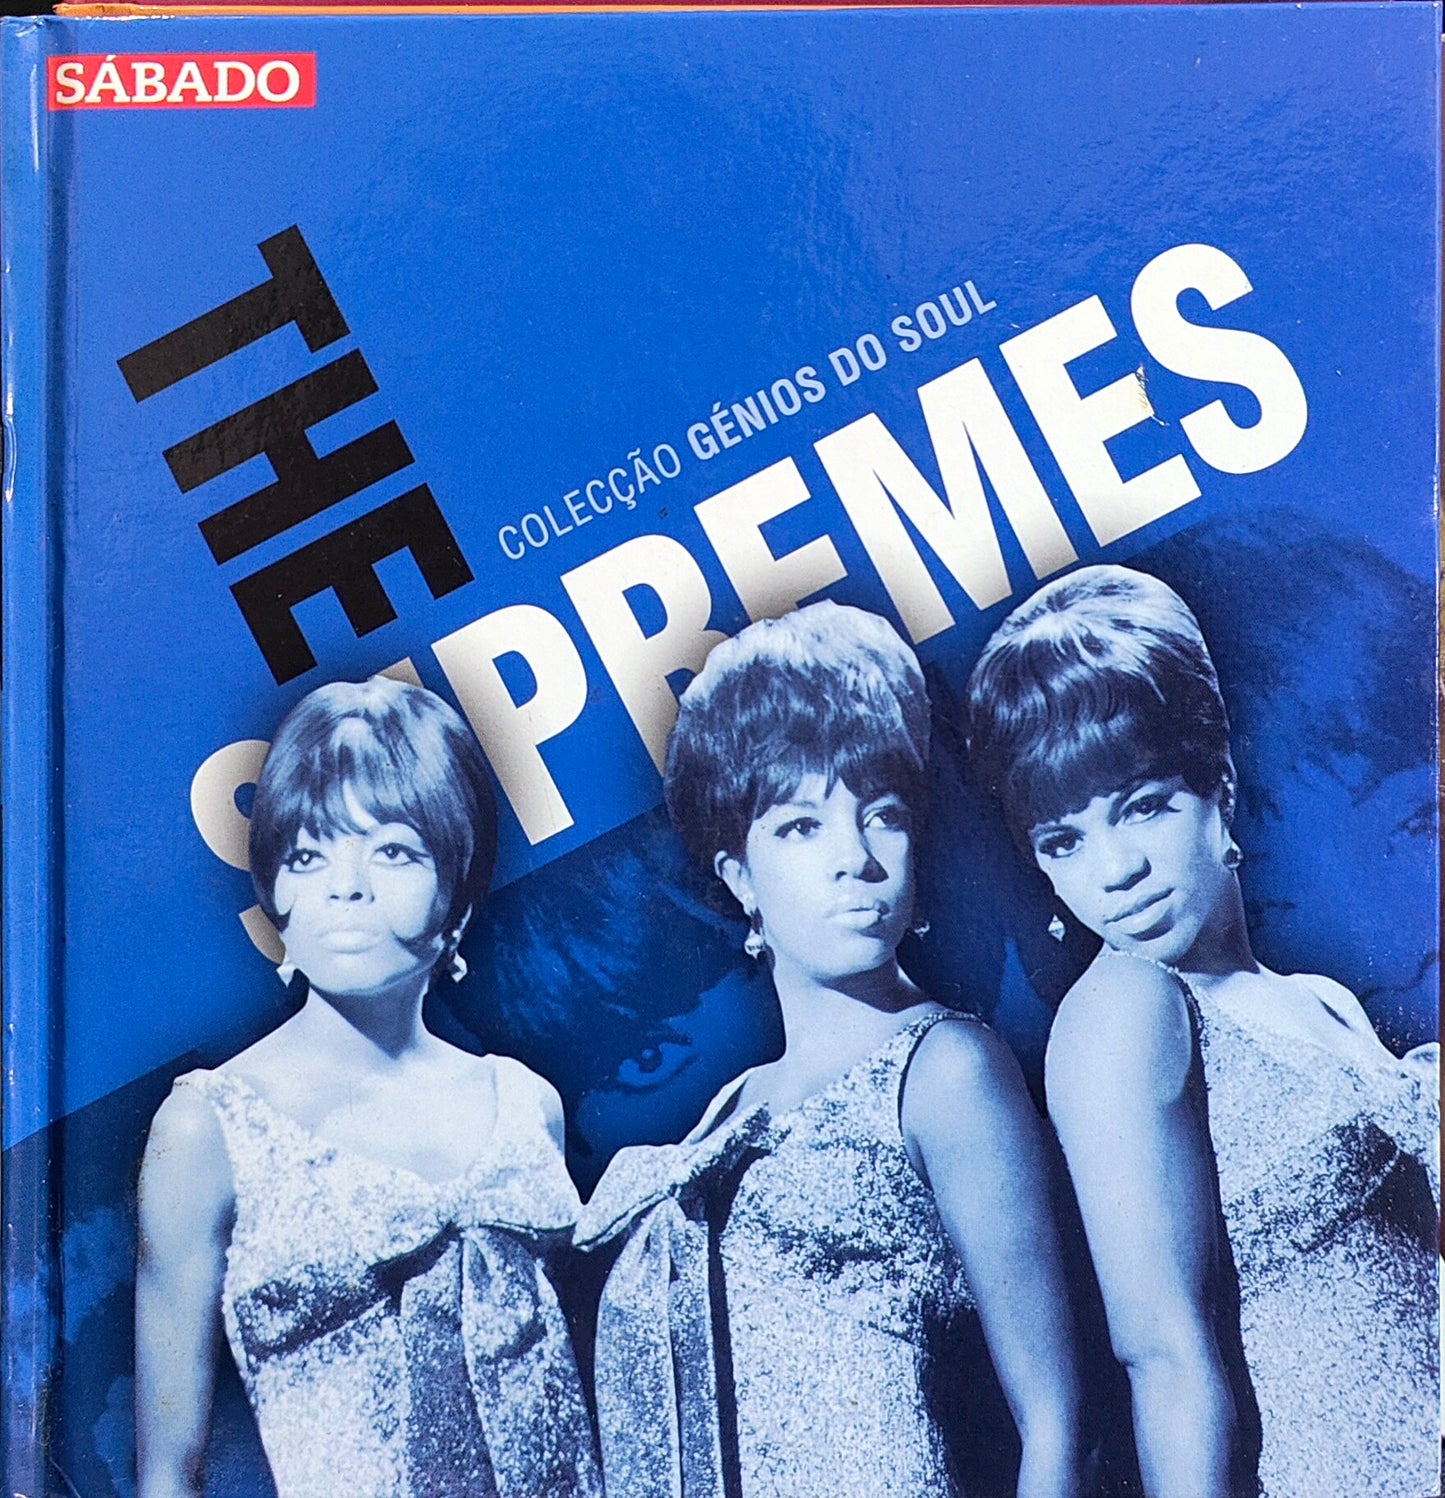 Livro + CD The Supremes – The Supremes - Colecção Génios Do Soul - Usado